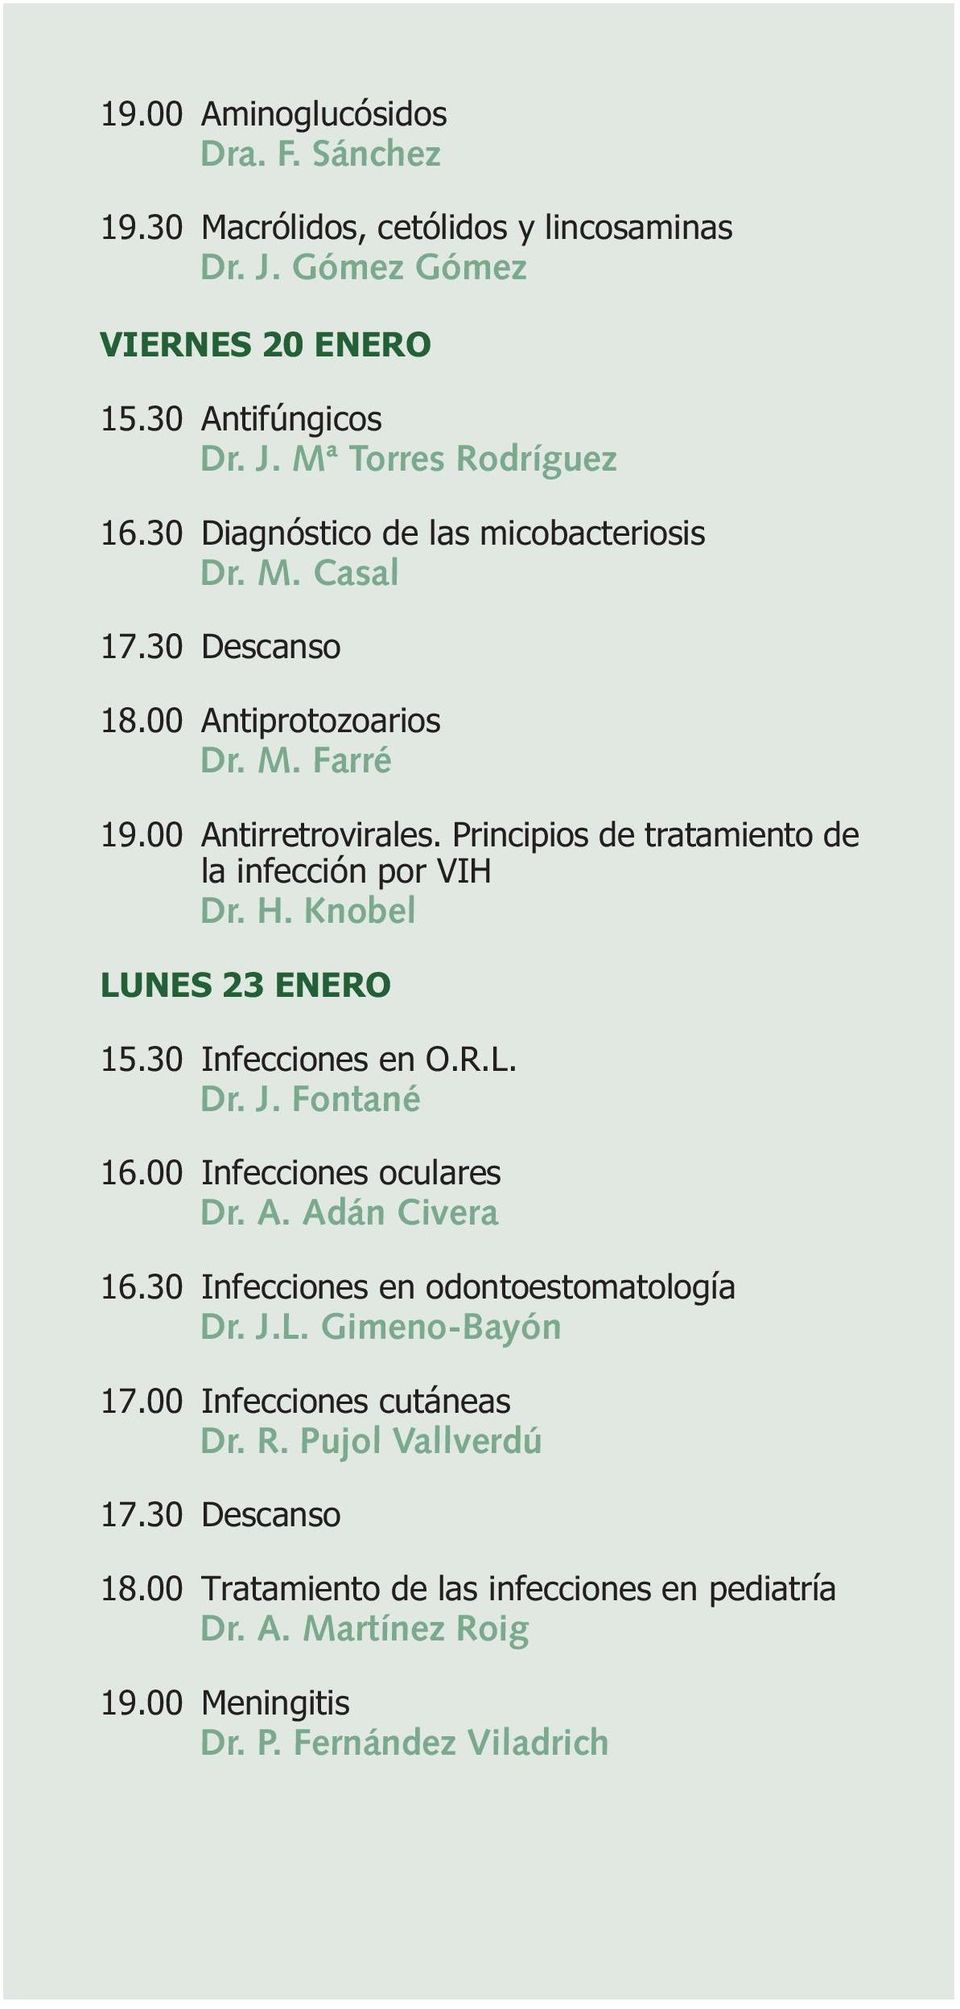 Principios de tratamiento de la infección por VIH Dr. H. Knobel LUNES 23 ENERO 15.30 Infecciones en O.R.L. Dr. J. Fontané 16.00 Infecciones oculares Dr. A. Adán Civera 16.